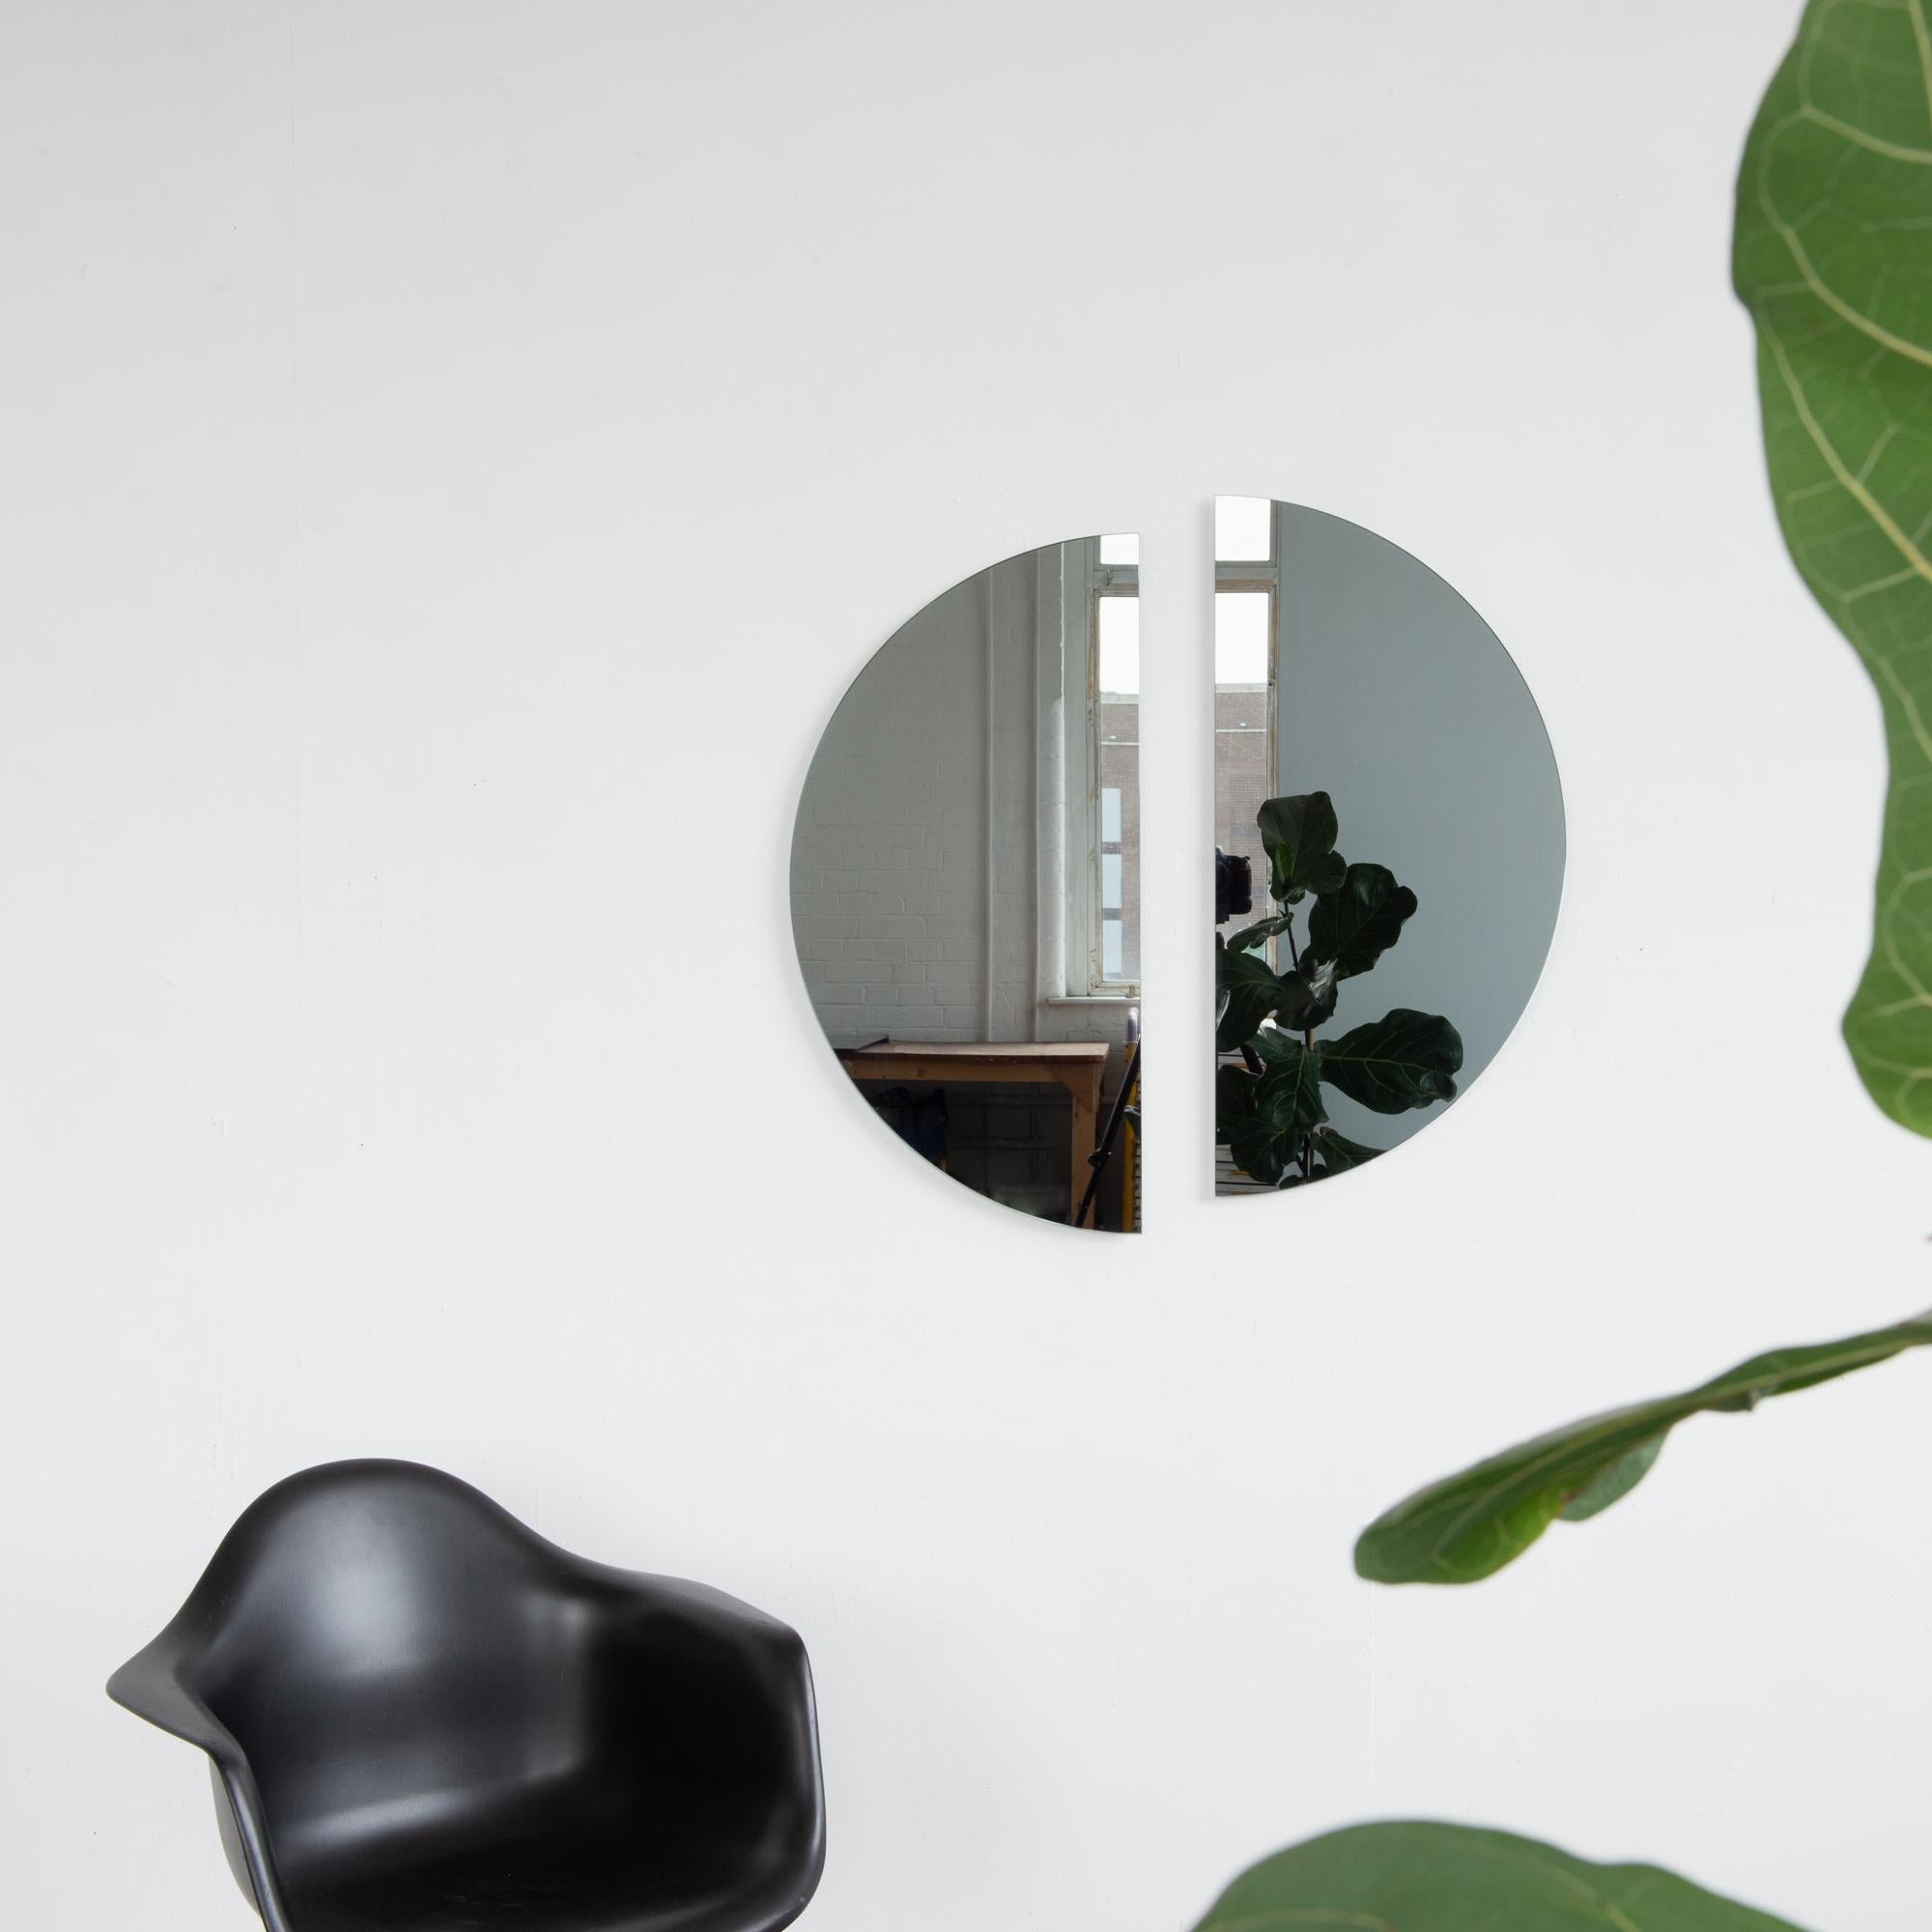 Set aus zwei minimalistischen, rahmenlosen, schwarz getönten Halbmondspiegeln Luna™ mit Schwebeeffekt. Ausgestattet mit einem hochwertigen und ausgeklügelten Aufhängesystem für eine flexible Installation in 4 verschiedenen Richtungen. Entworfen und